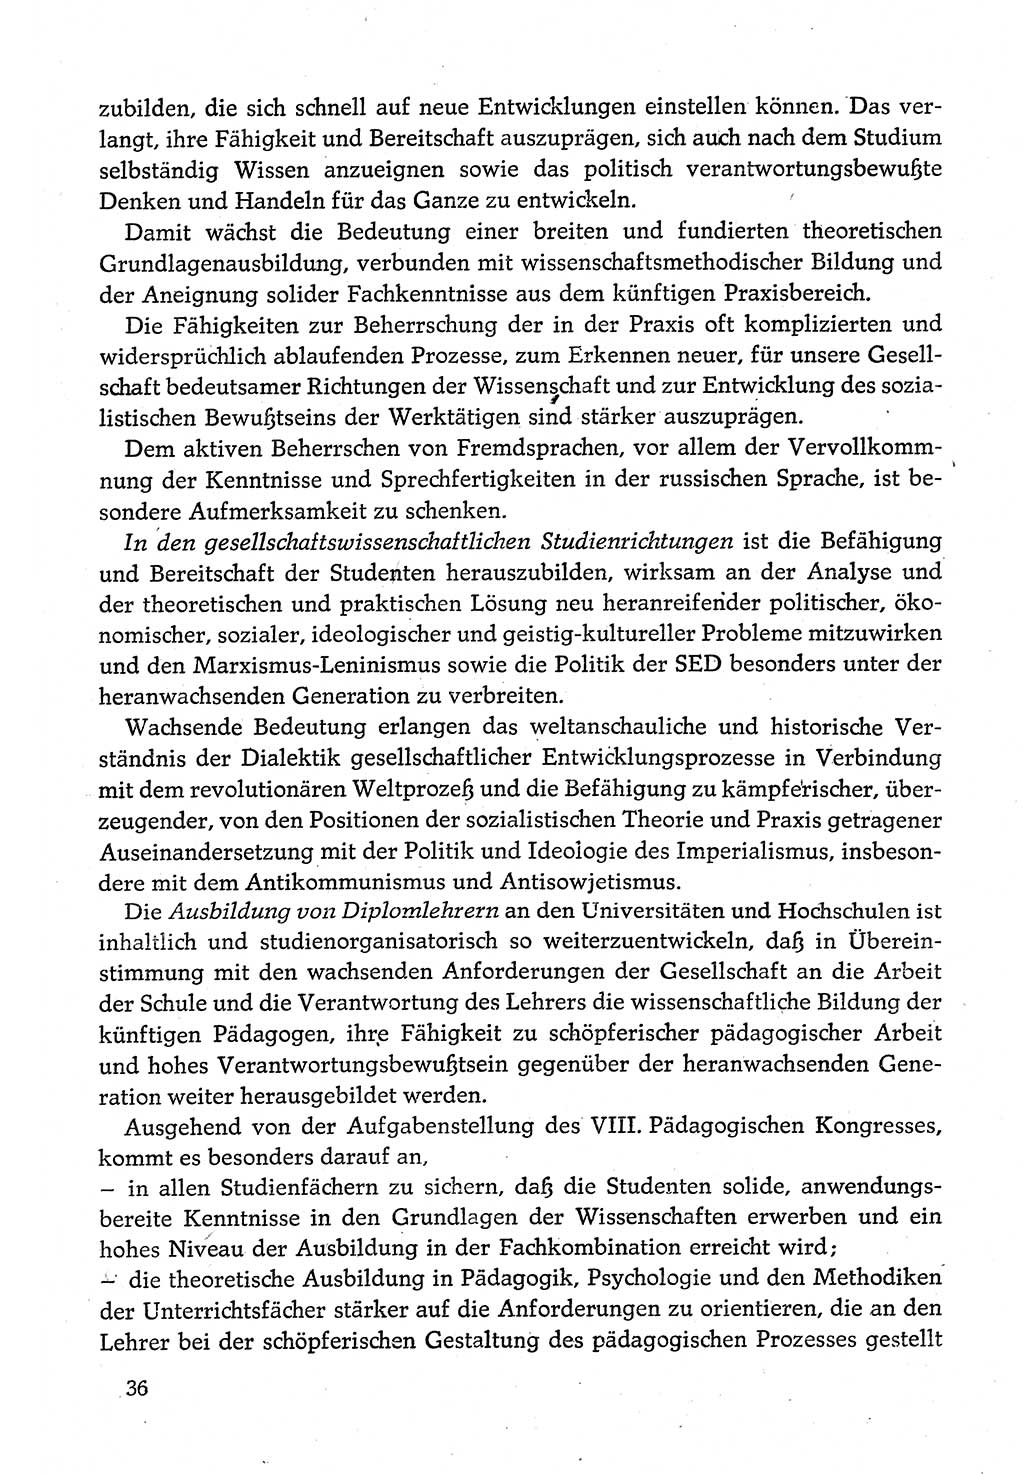 Dokumente der Sozialistischen Einheitspartei Deutschlands (SED) [Deutsche Demokratische Republik (DDR)] 1980-1981, Seite 36 (Dok. SED DDR 1980-1981, S. 36)